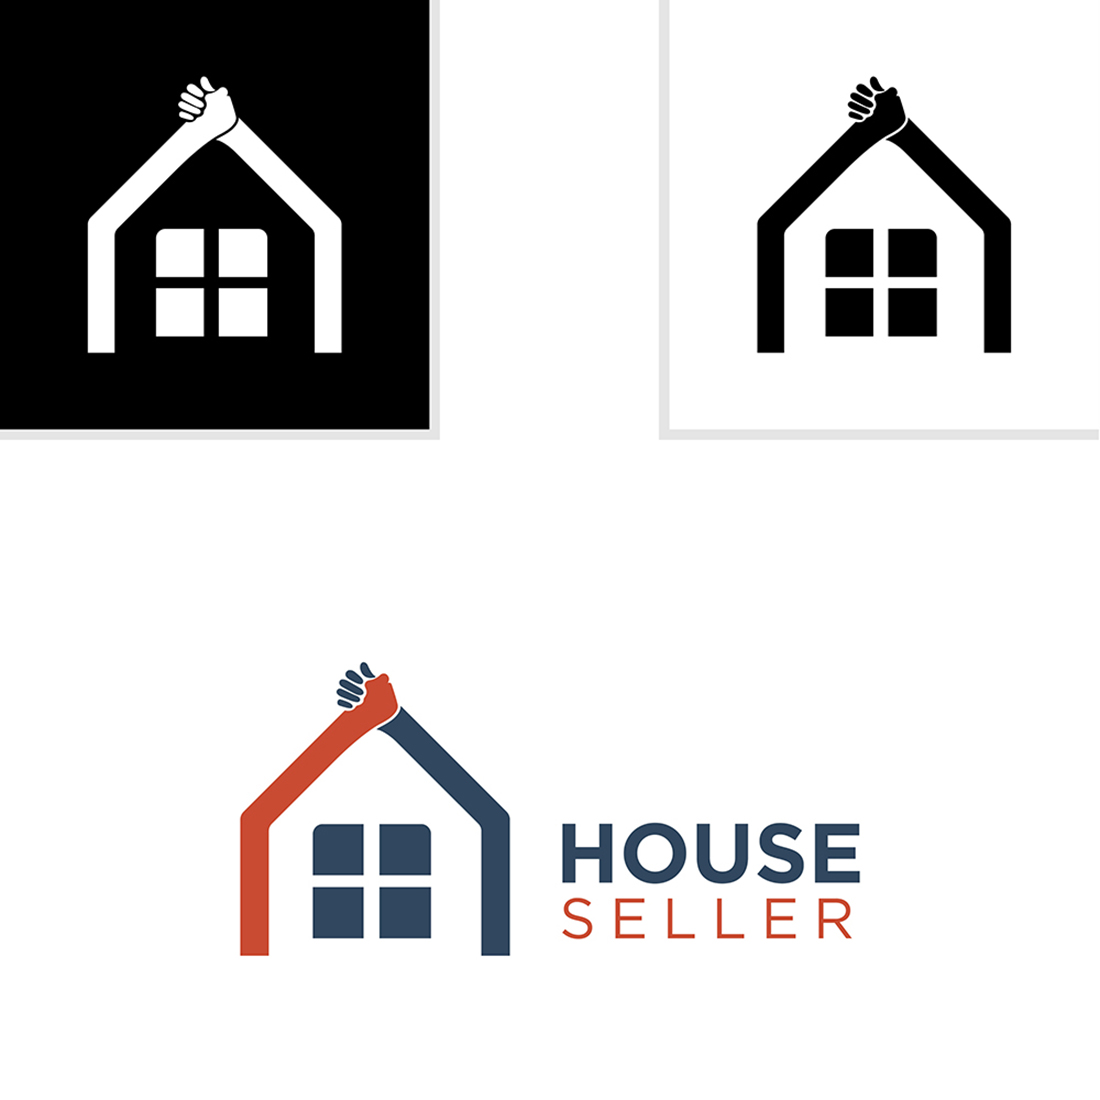 House Seller Logo Design cover.